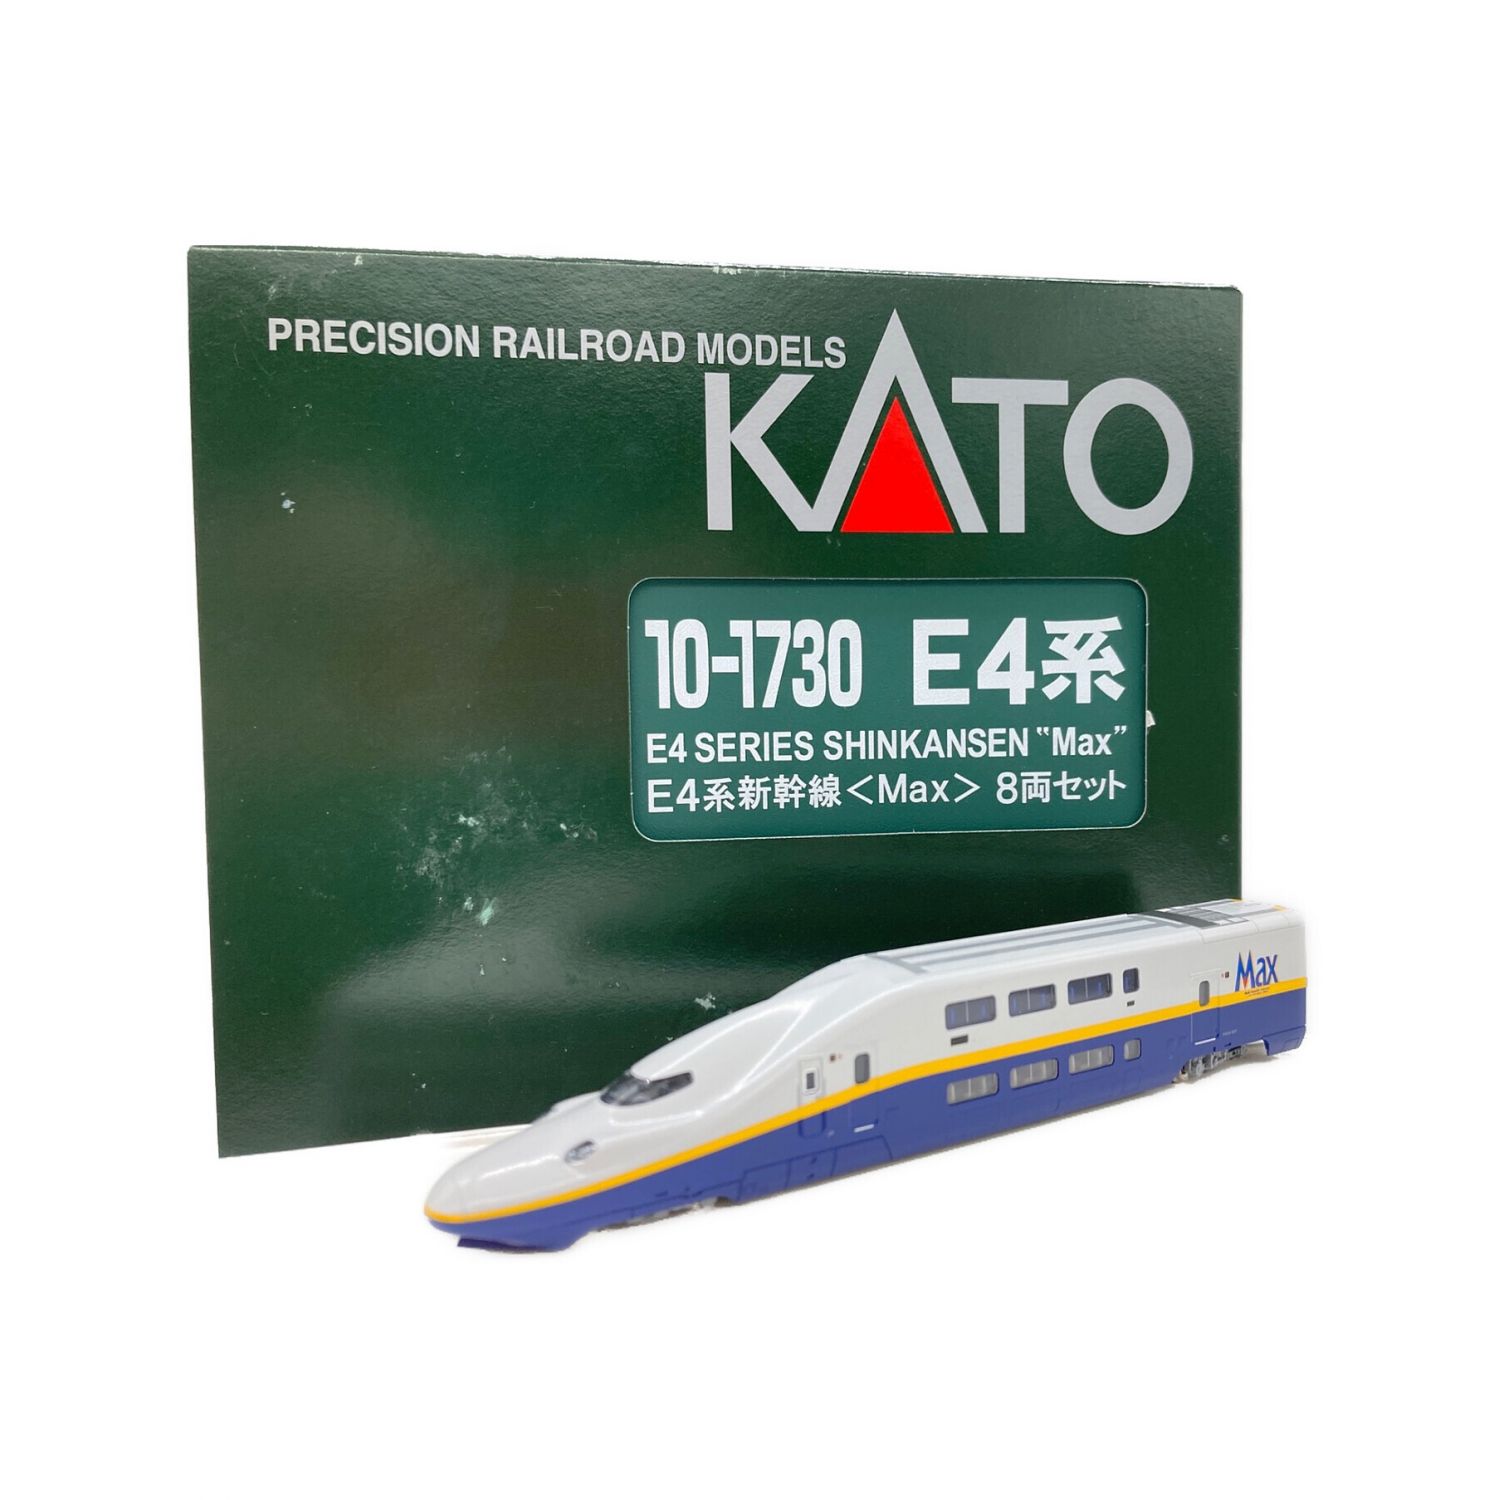 KATOKATO E4系新幹線「Maxとき」8両セット - 鉄道模型